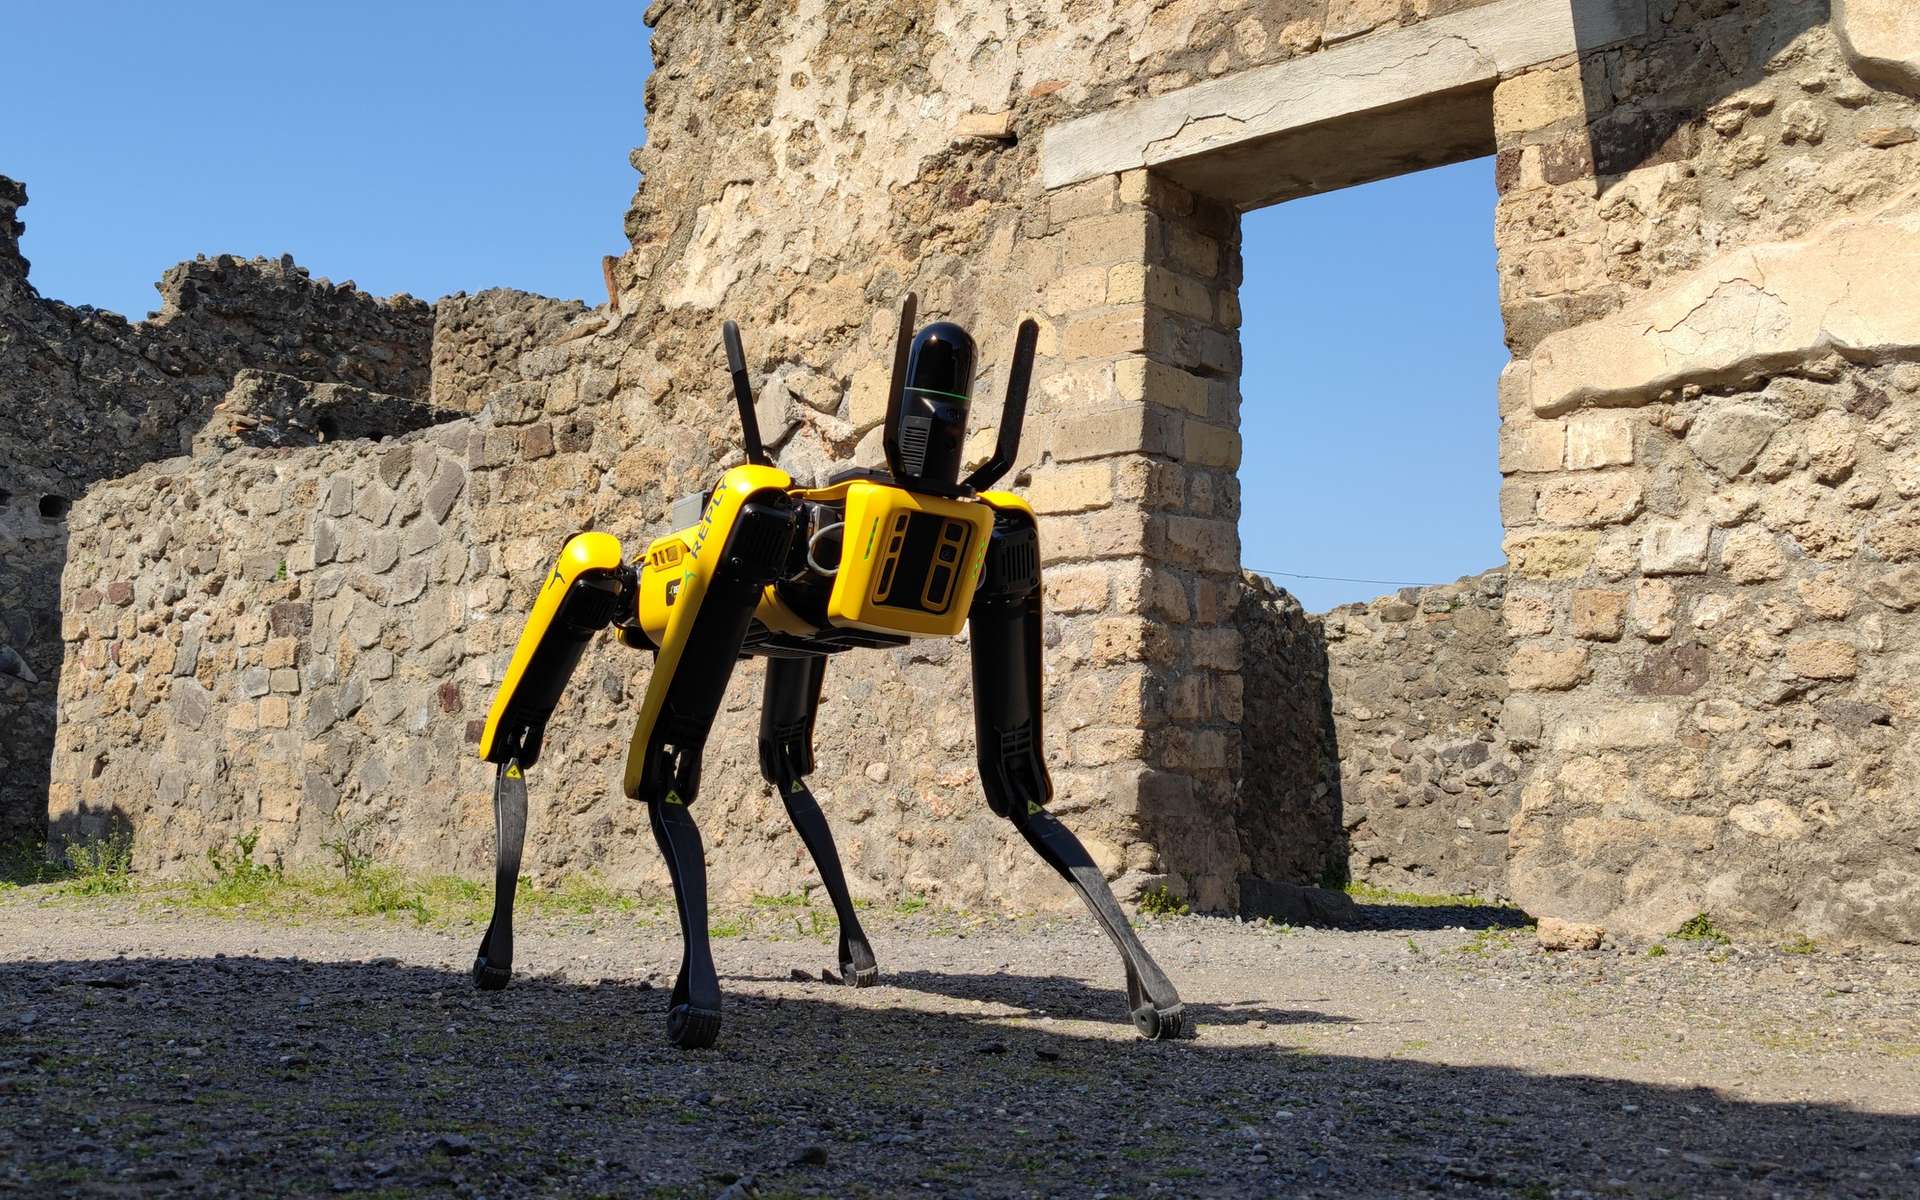 Le robot Spot sera désormais un gardien du site archéologique de Pompéi. © Parc archéologique de Pompéi